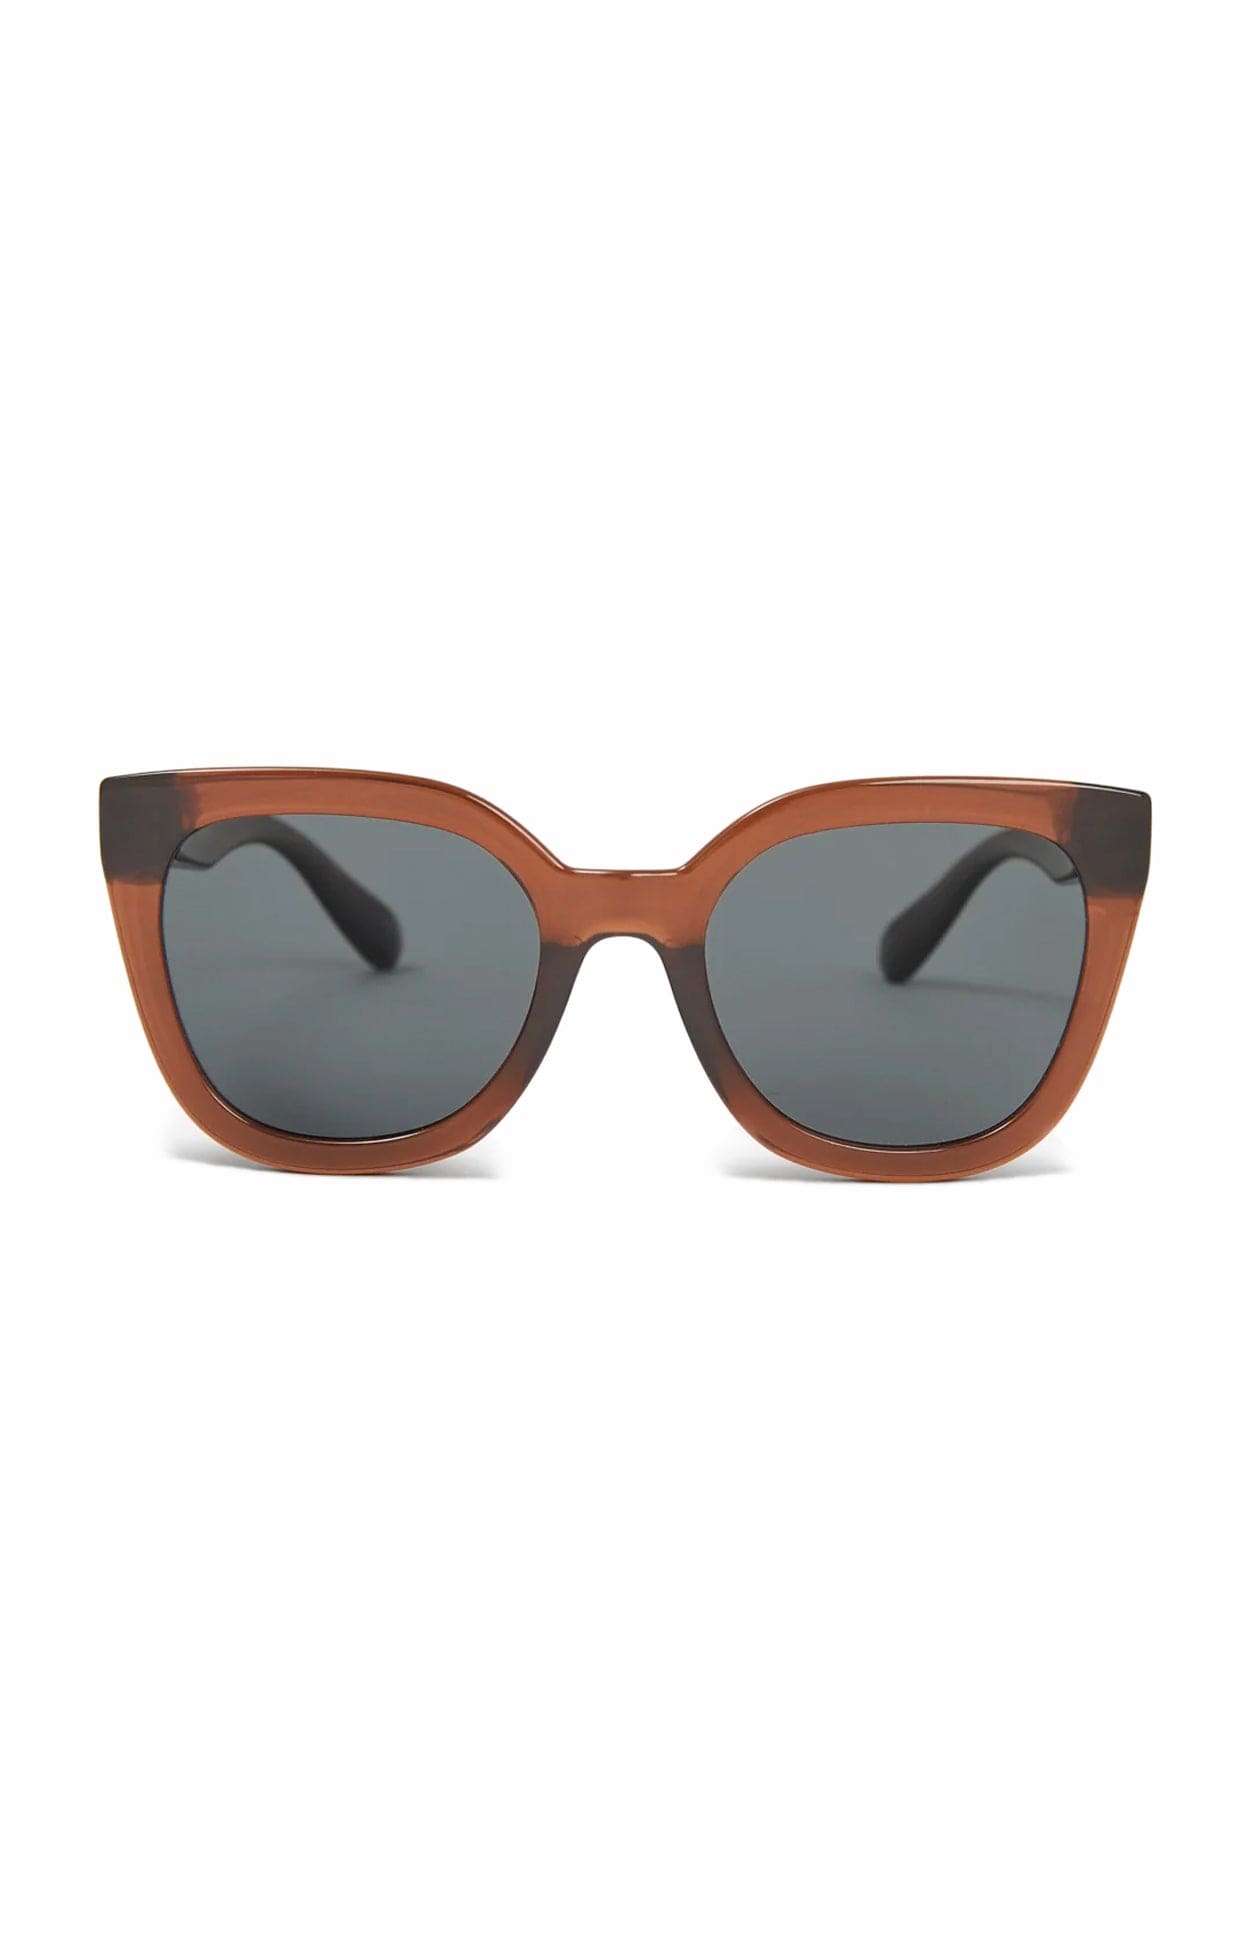 ACCESSORIES Sunglasses One Size / Neutral MIA SUNGLASSES IN TOBAC GREY